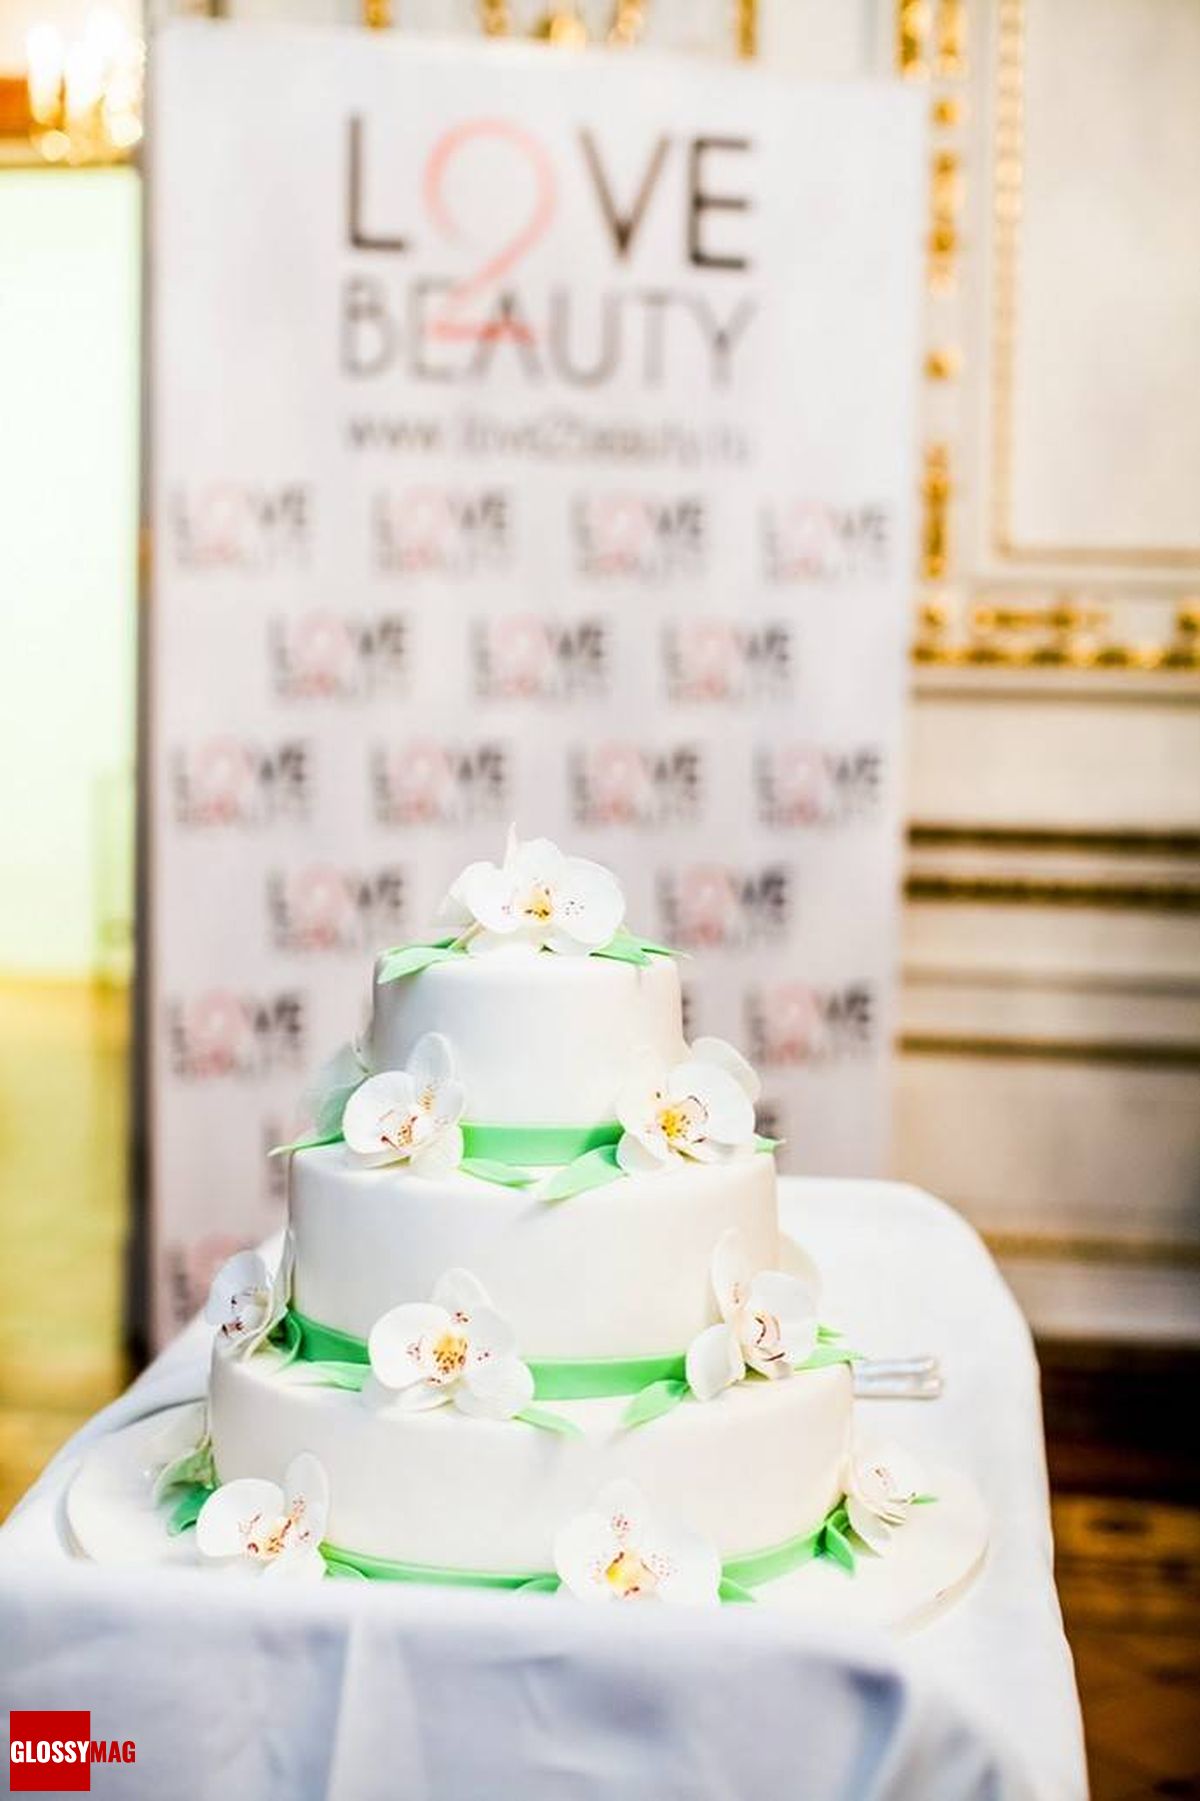 Праздничный торт в честь завершения официальной программы British Beauty Bar 2015